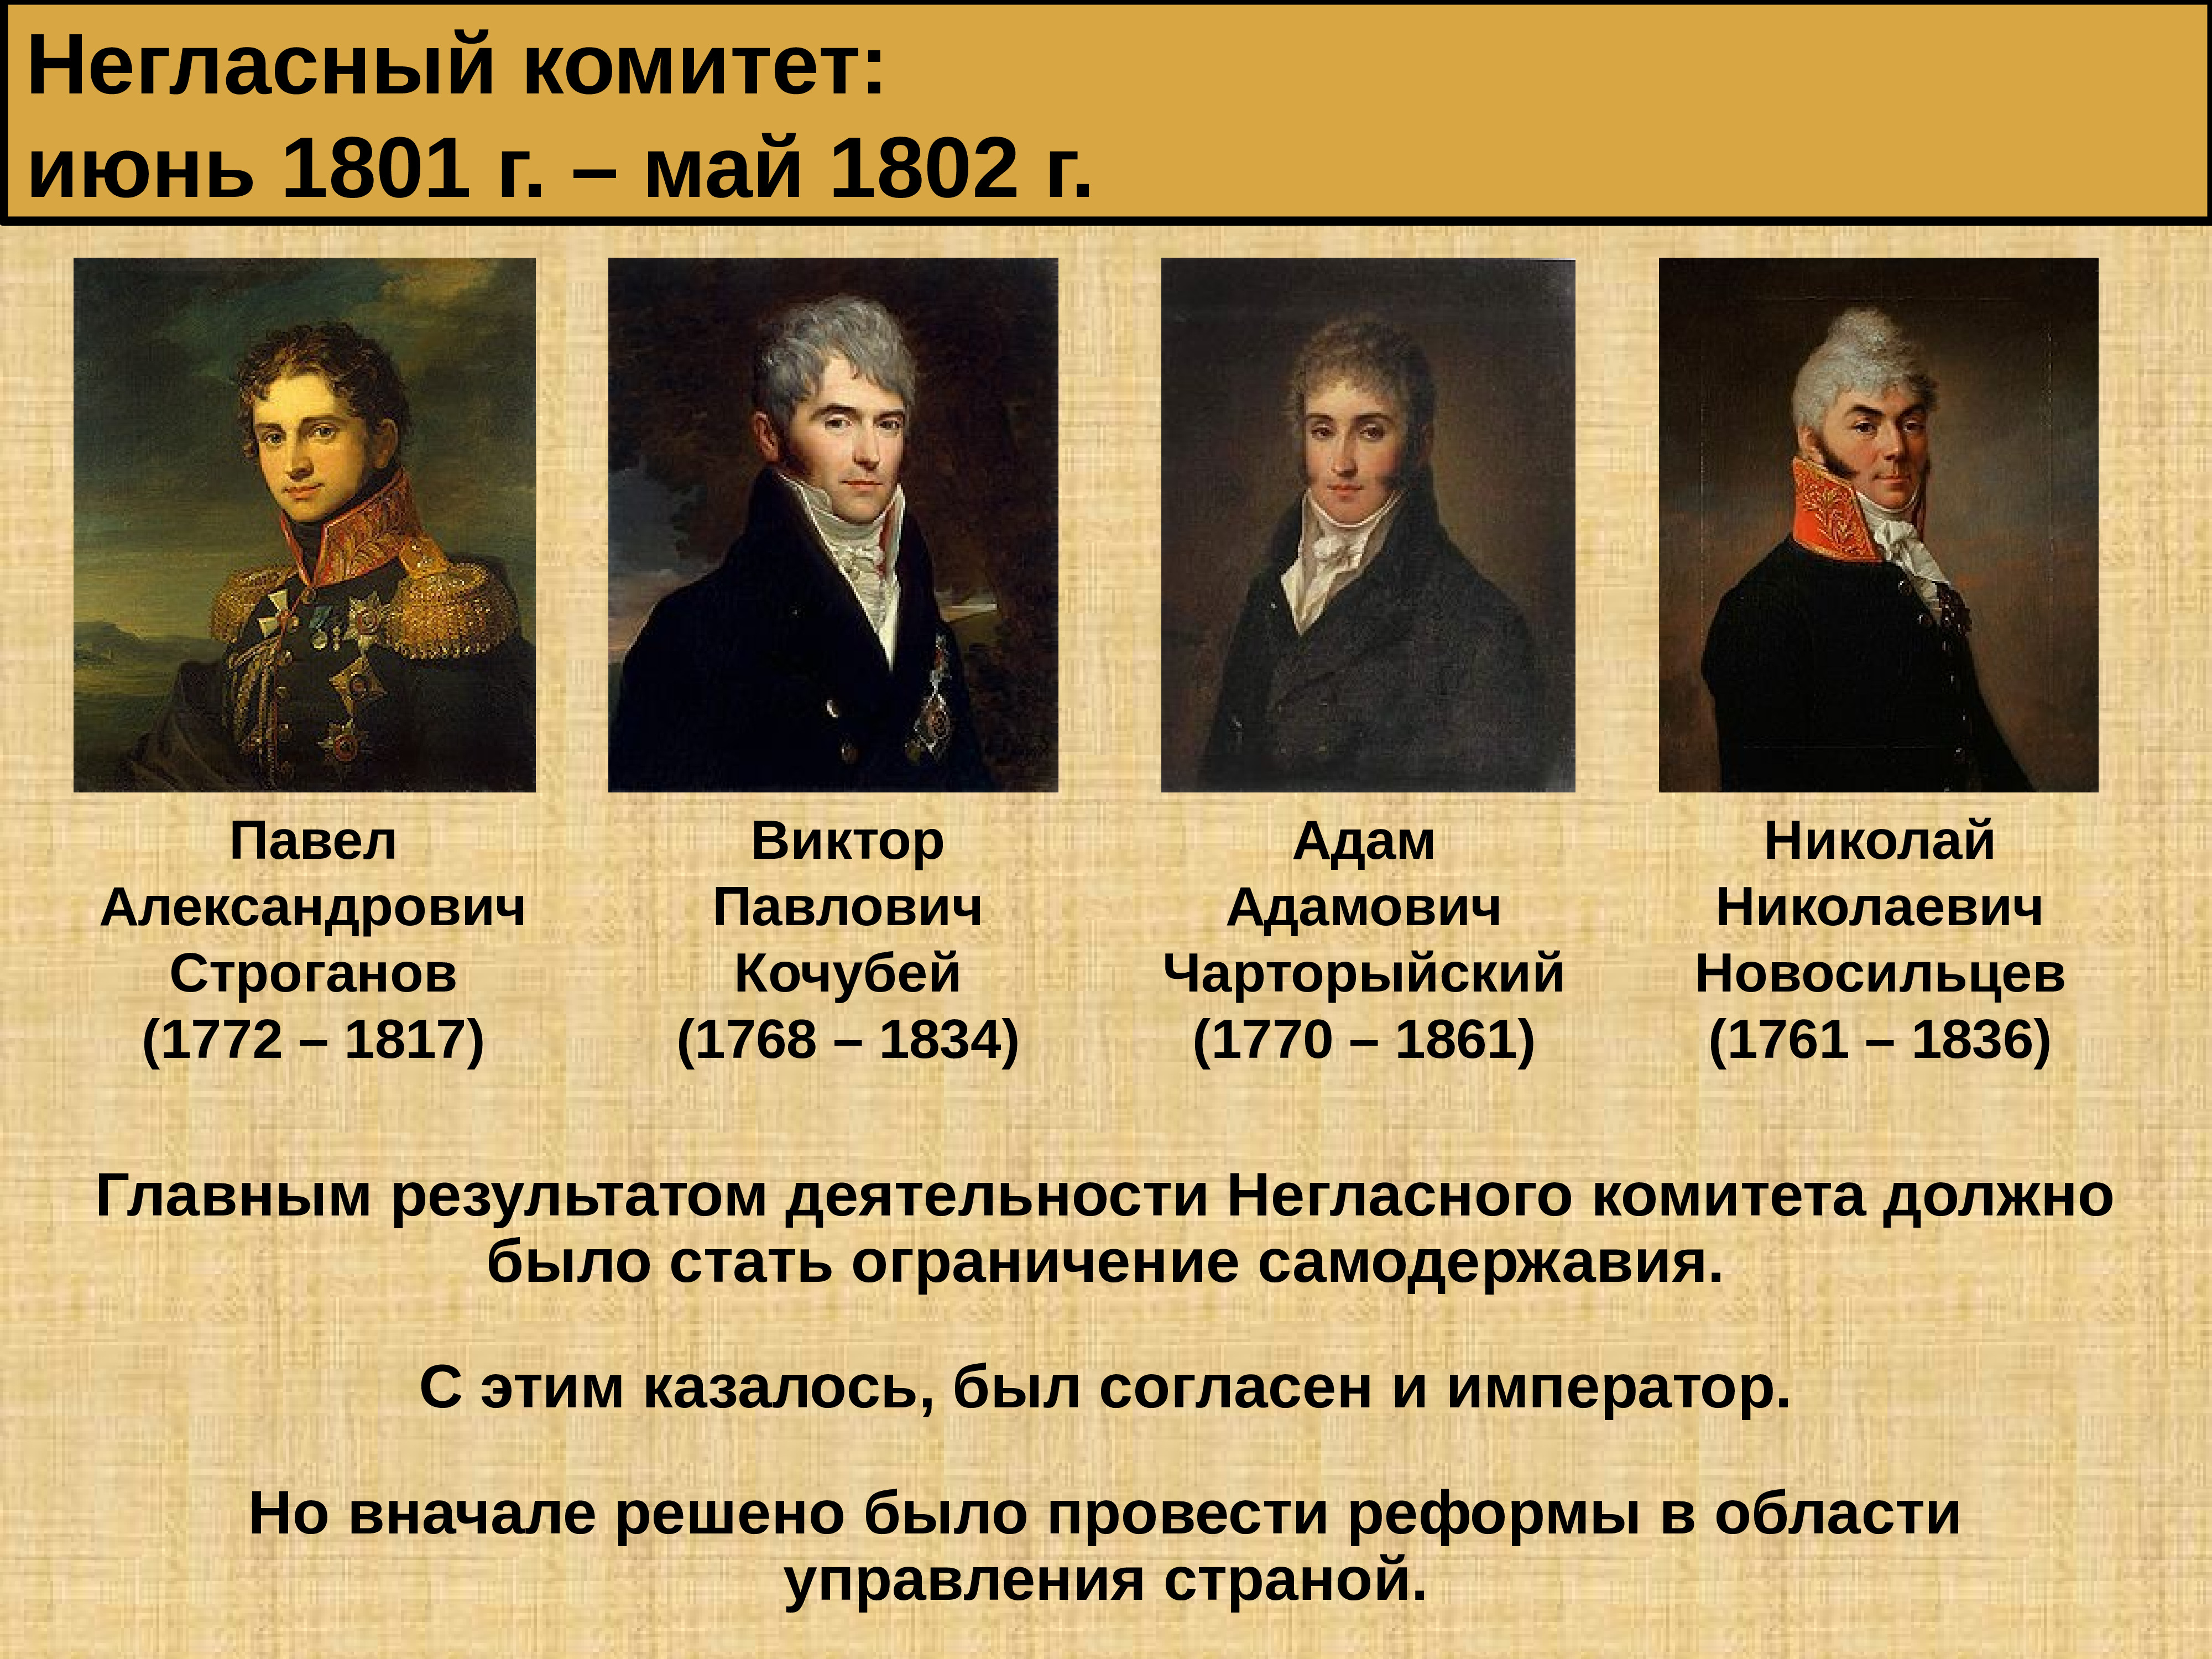 Негласный комитет период. Негласный комитет 1801 - 1805.